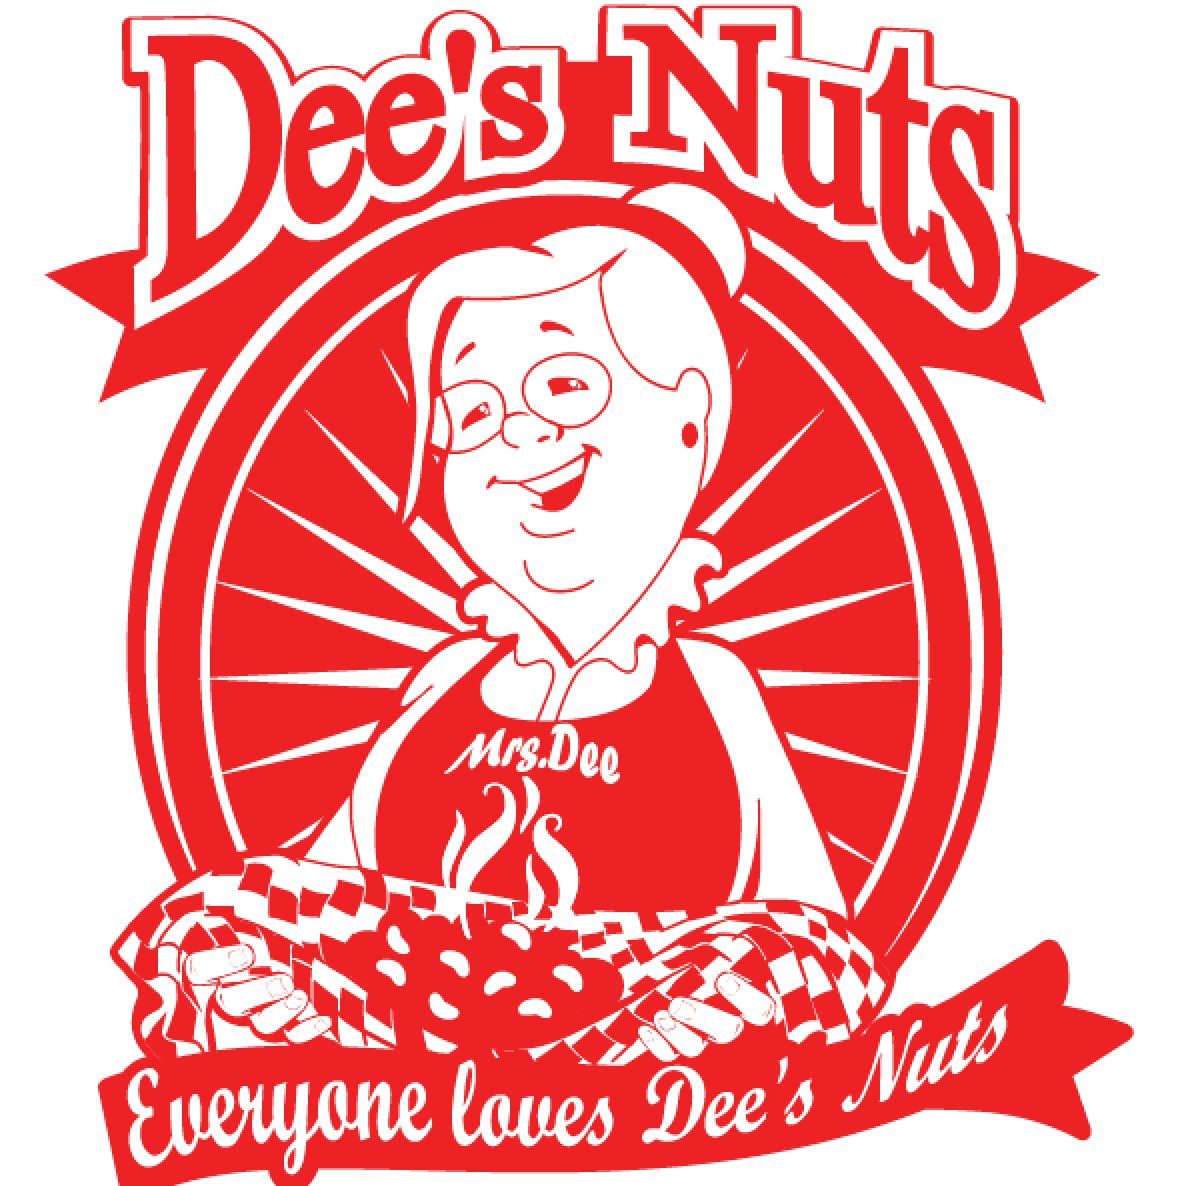 Dees big nuts